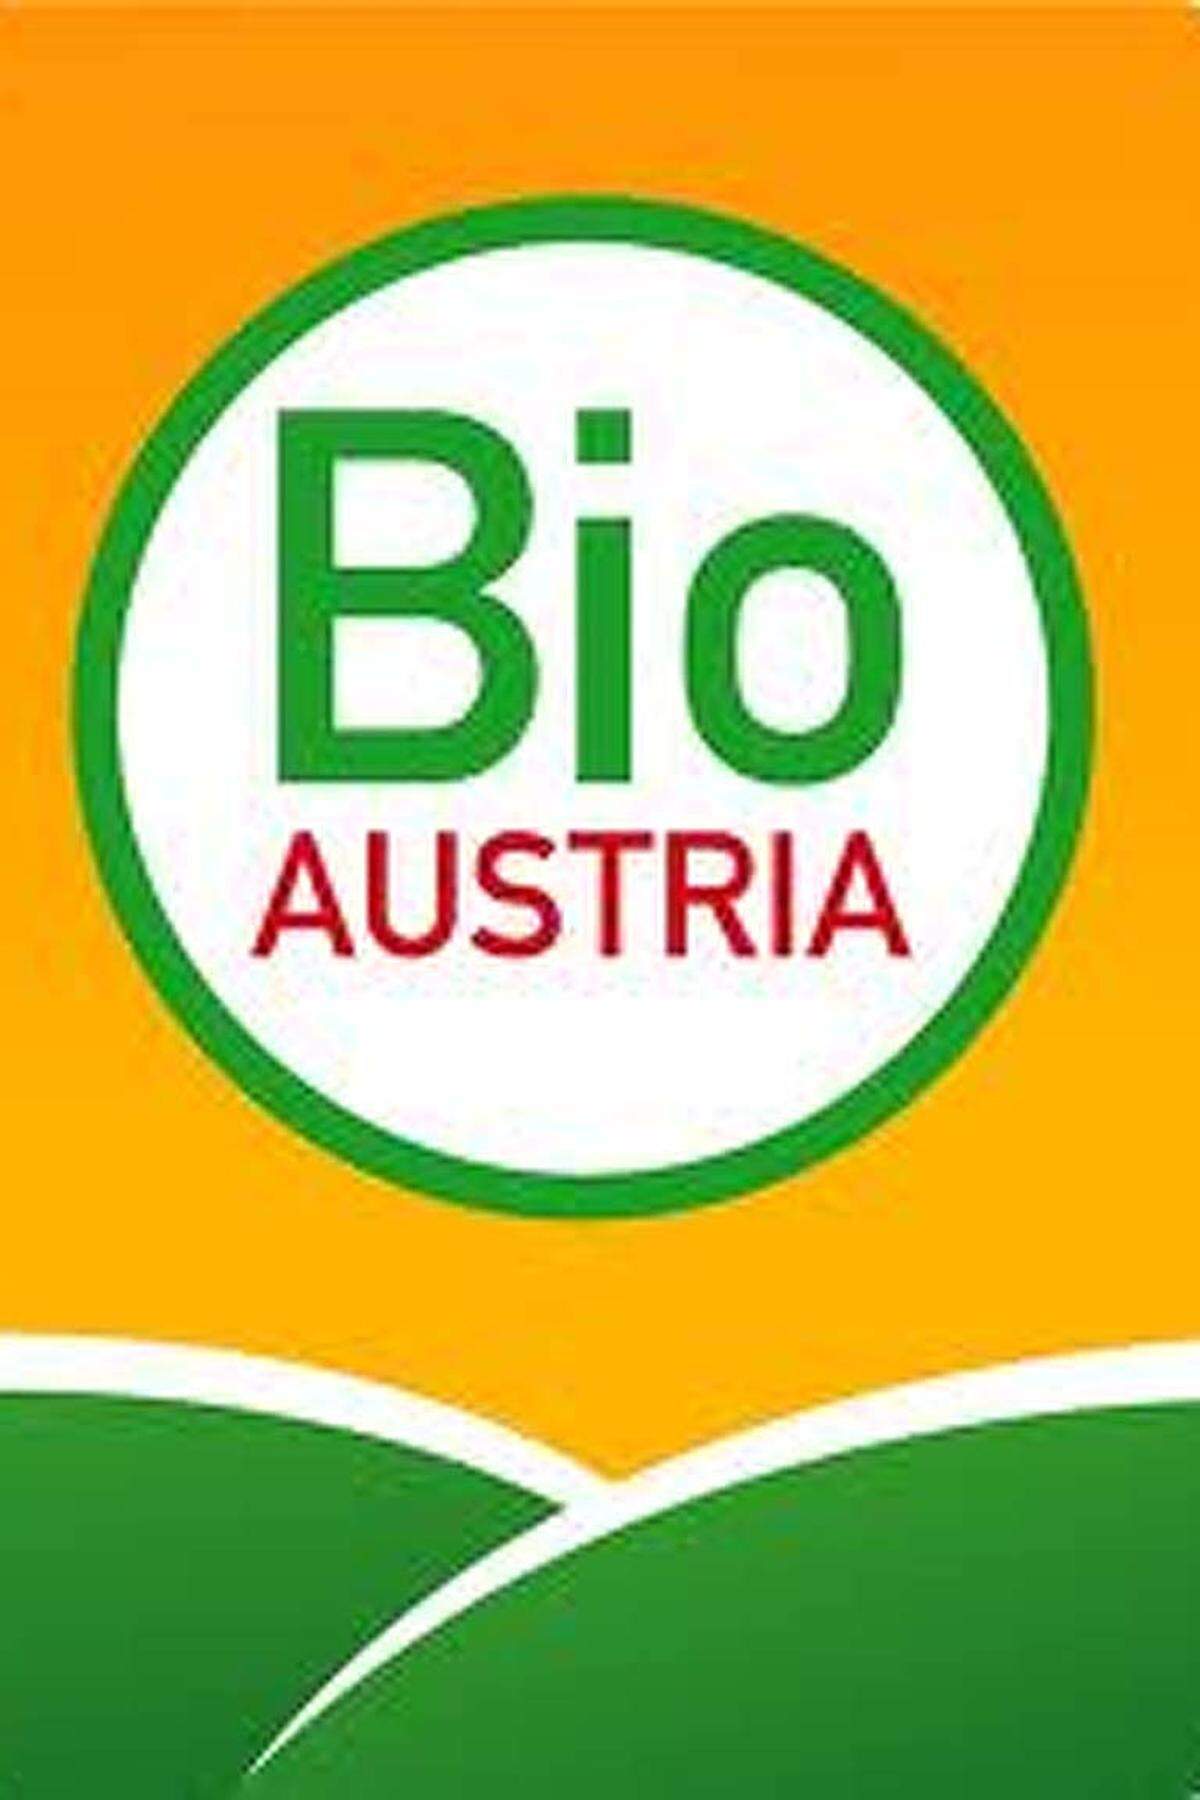 Bio Austria ist der Zusammenschluss österreichischer Biobauern und vereinigt die österreichischen Bioverbände. Produkte mit dieser Kennzeichnung erfüllen die Anforderungen der EU-Bio-Verordnungen sowie der Bio-Richtlinien des Österreichischen Lebensmittelbuches. Mindestens einmal jährlich wird von einer staatlich autorisierten Kontrollstelle die Einhaltung der Richtlinien überprüft.